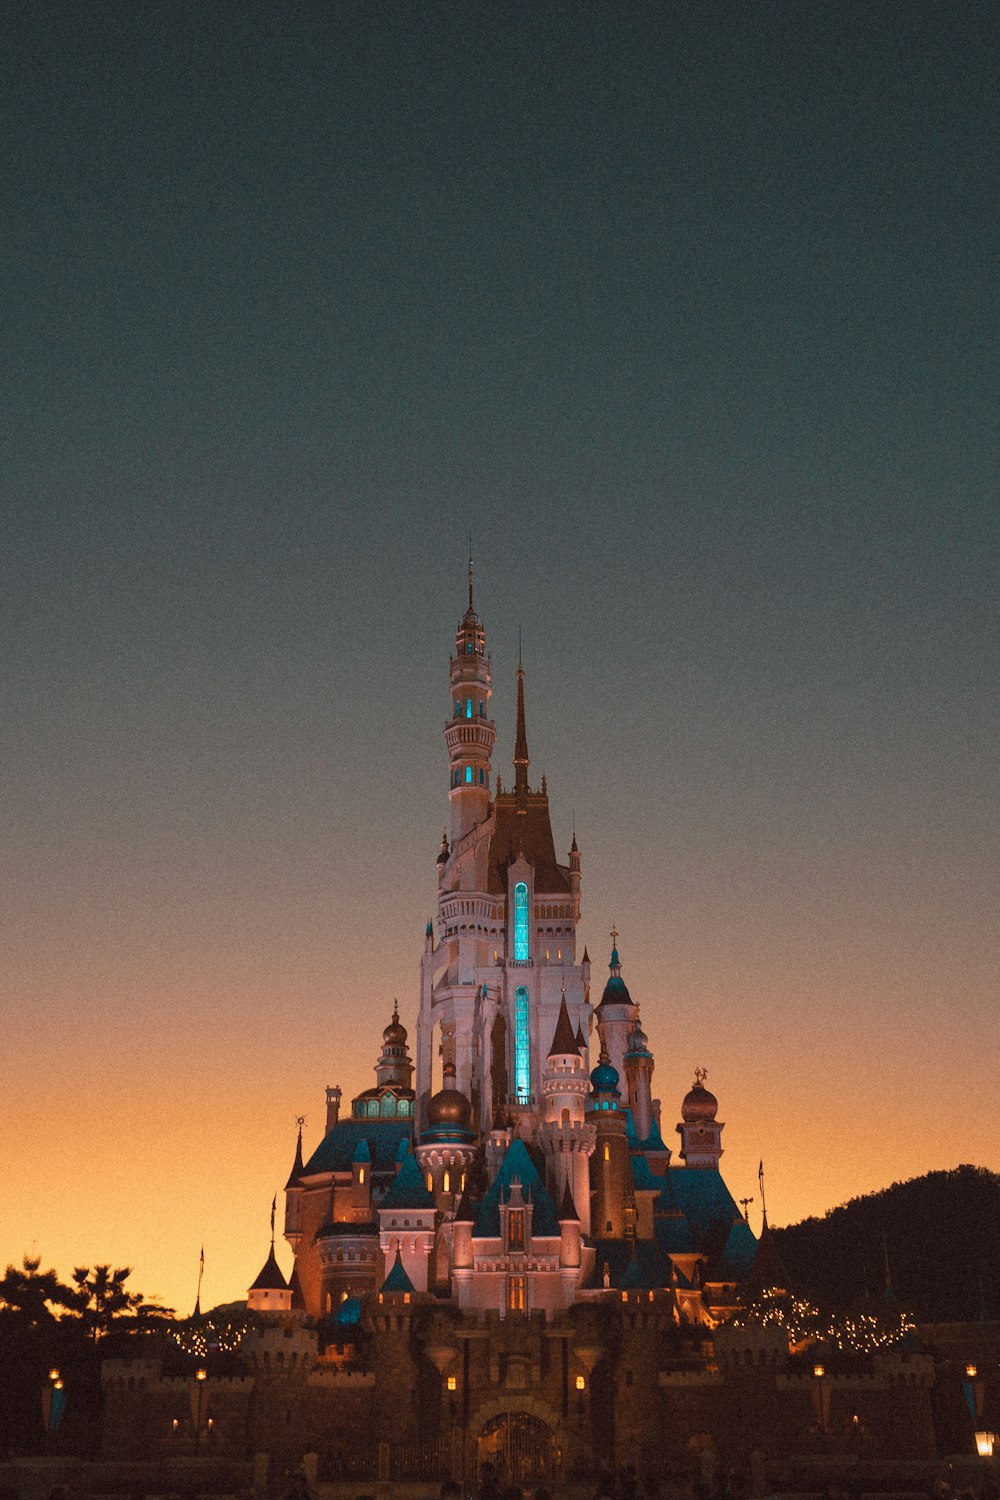 Un castillo iluminado por la noche con un fondo de cielo